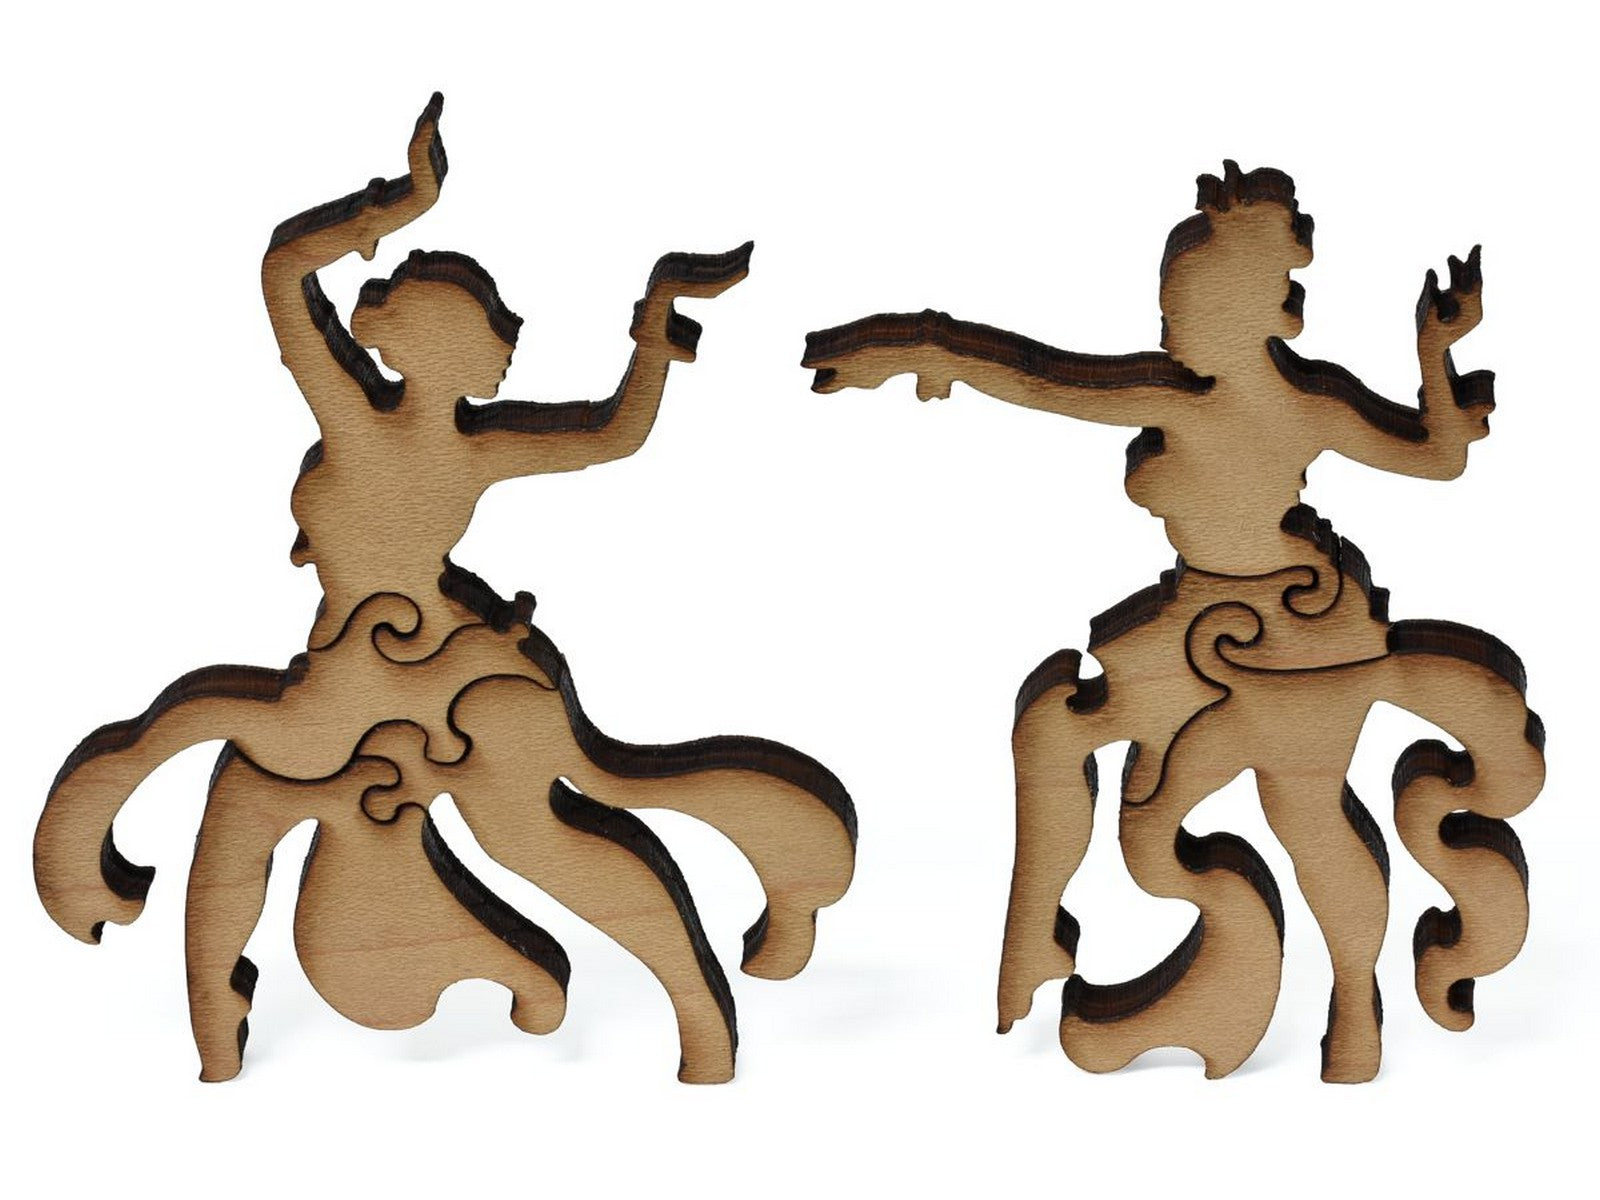 A closeup of pieces showing two women dancing.